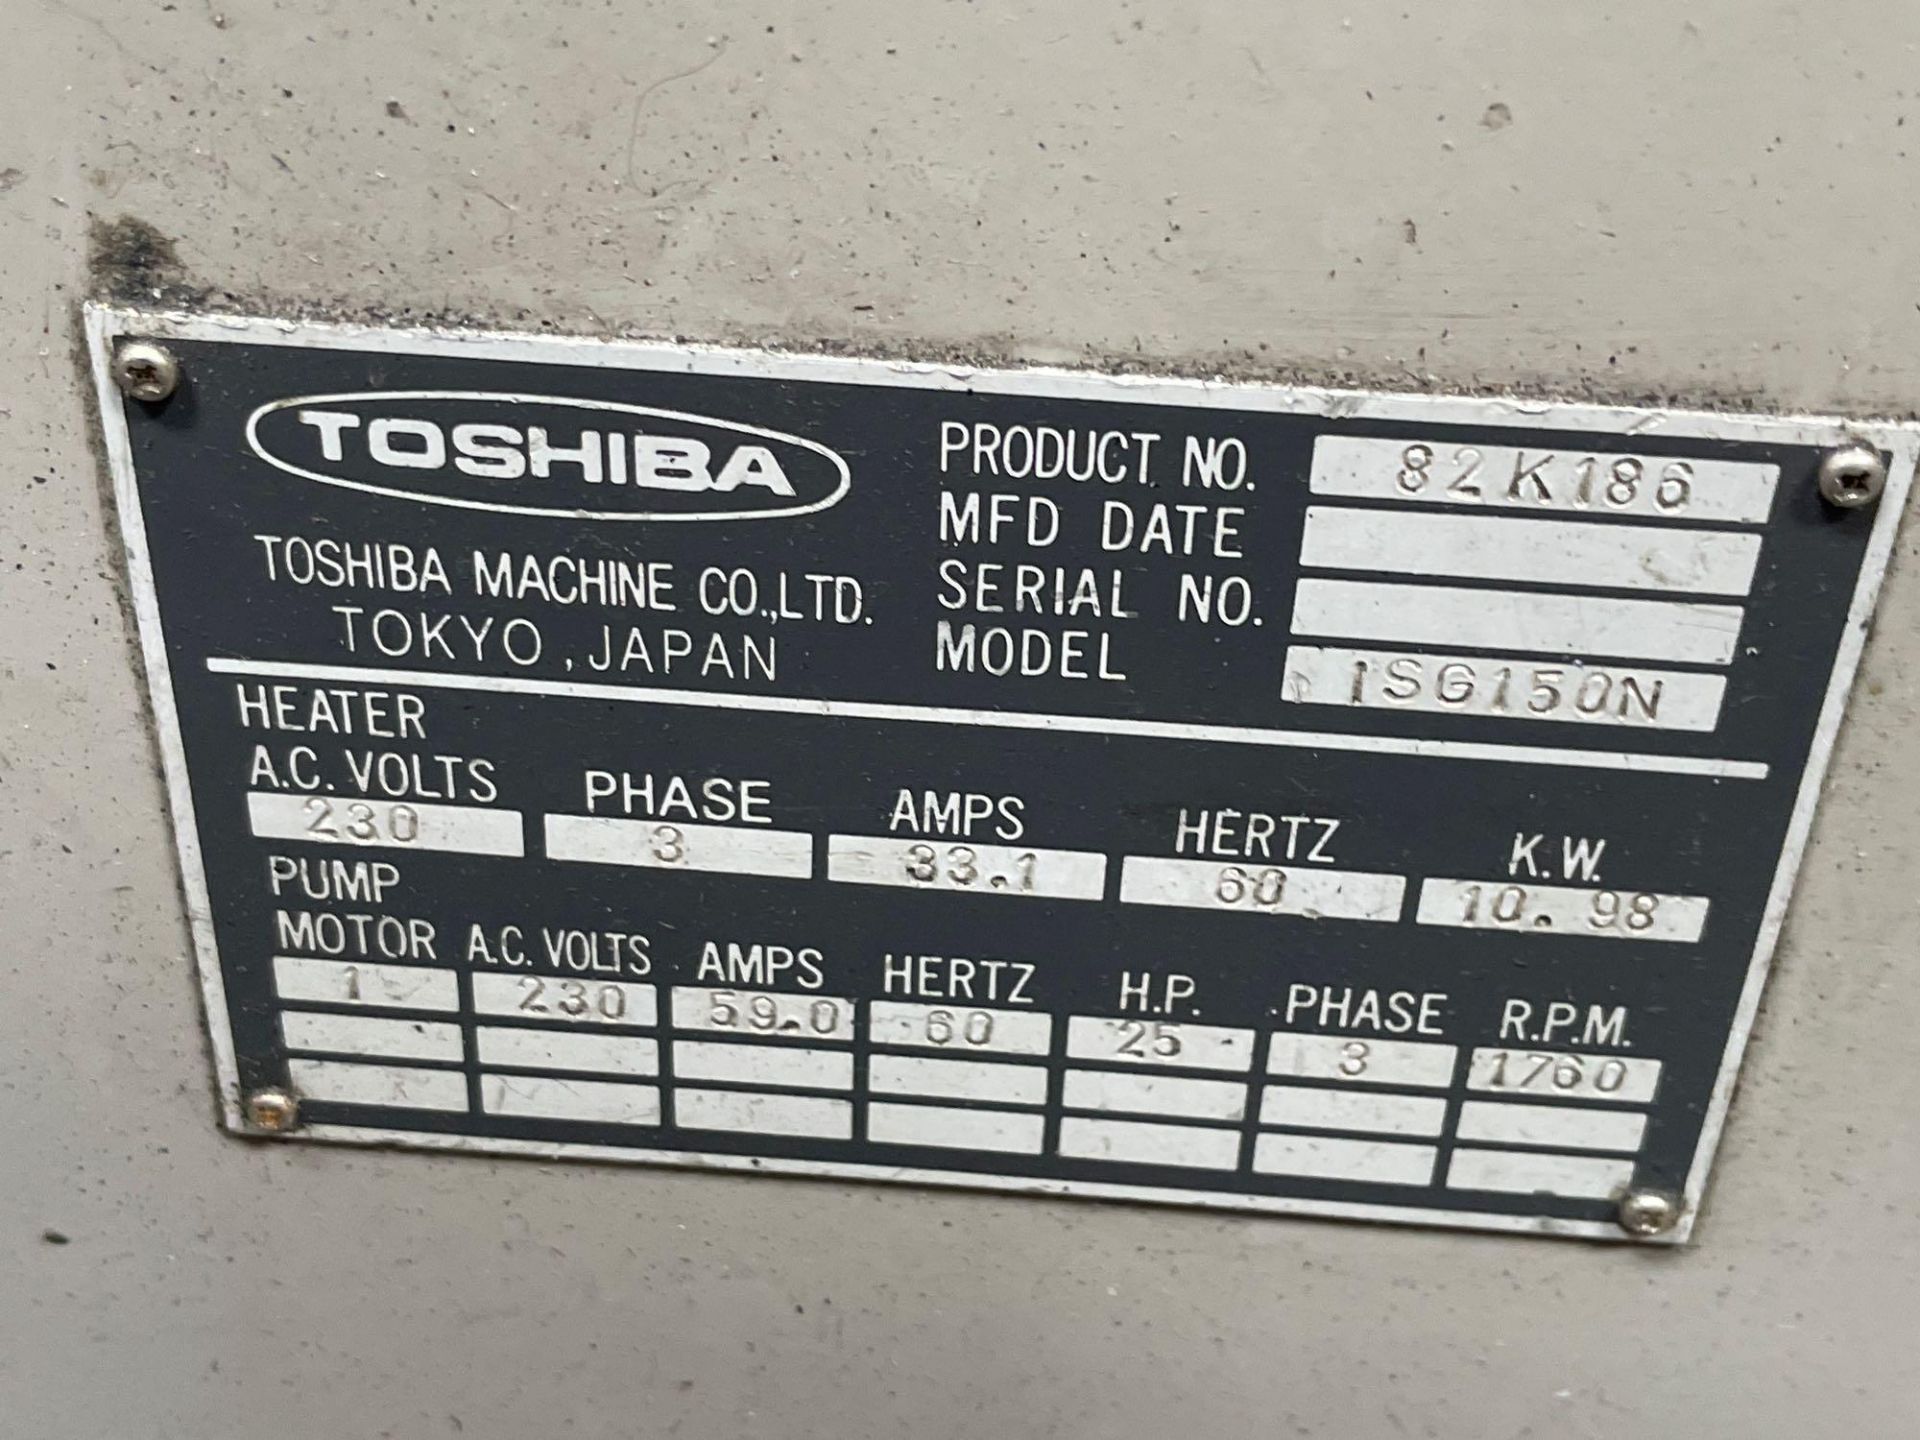 150 Ton Toshiba ISG150N Injection Molder, 8.1oz Shot Size, Injectvisor V10 Control, New 1999 - Image 8 of 9